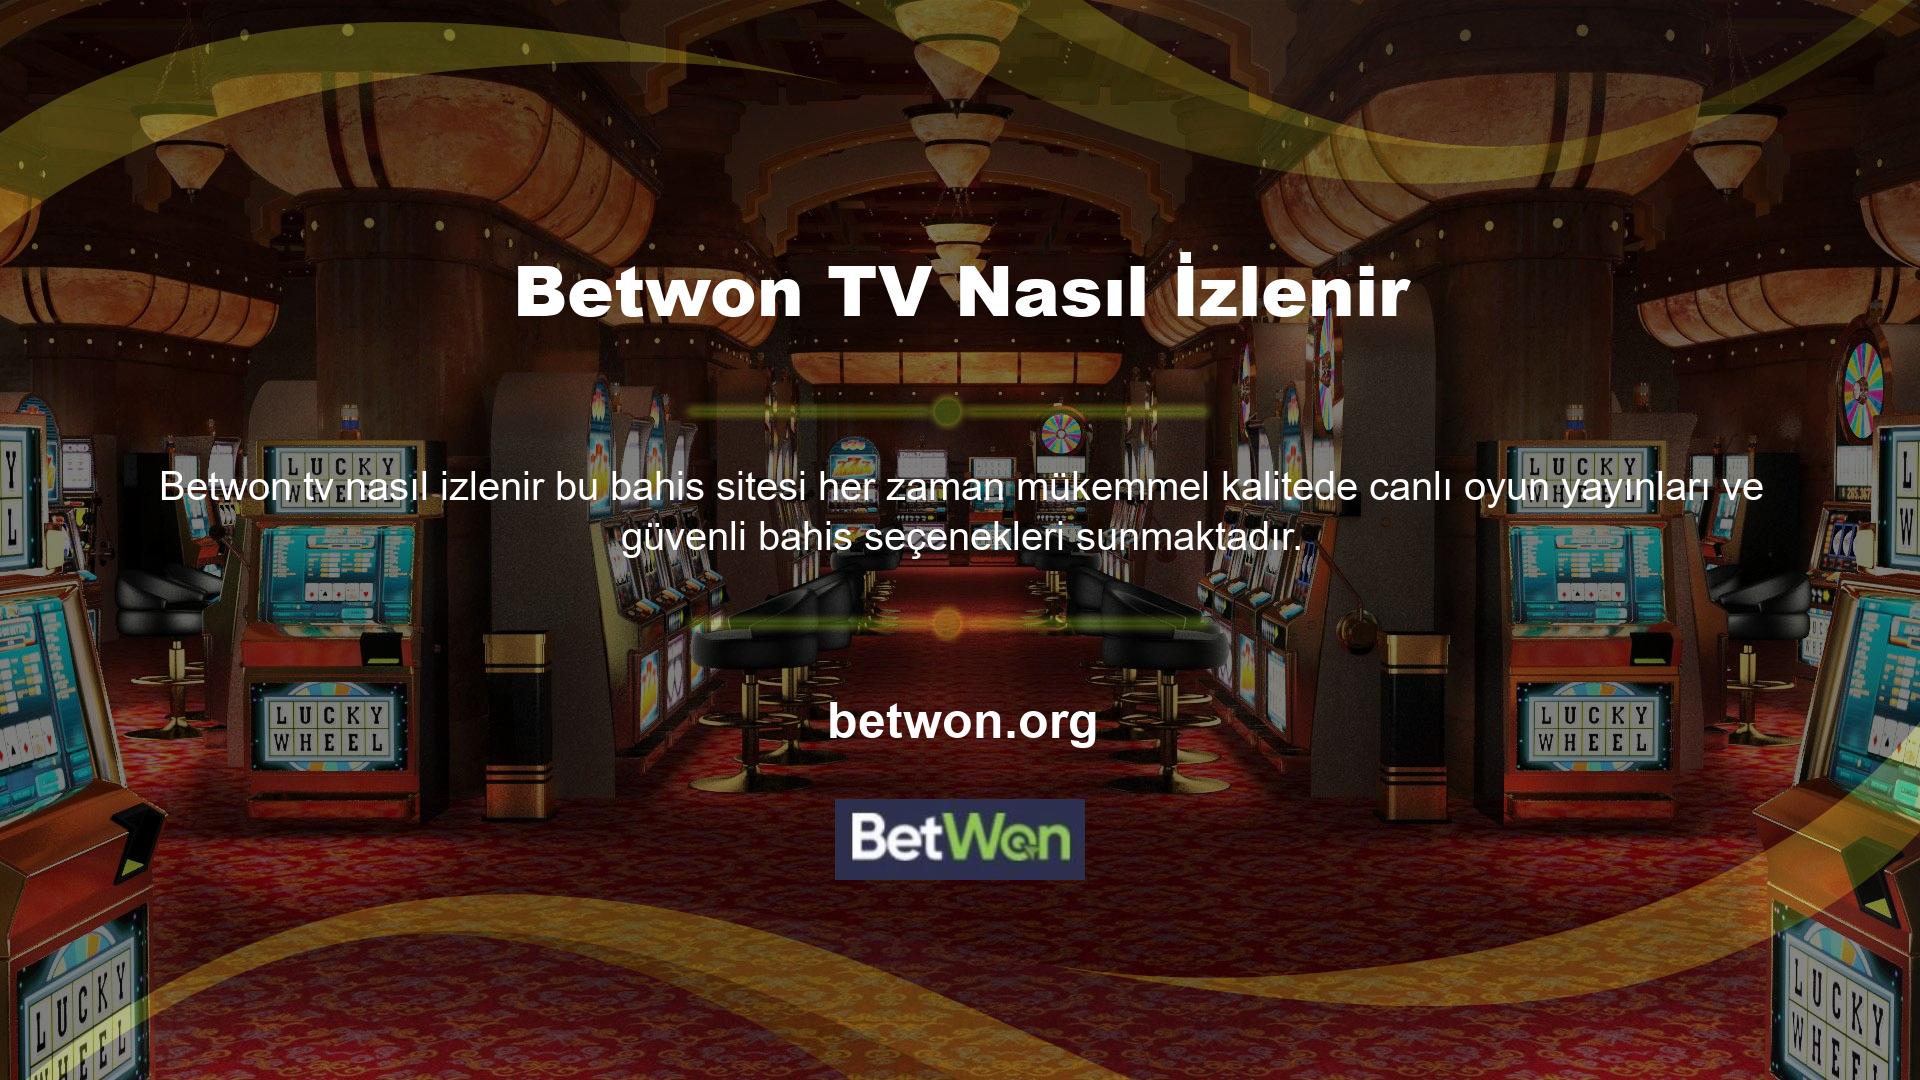 Elbette "Betwon TV nasıl izlenir" gibi bir adres de seçebilirsiniz